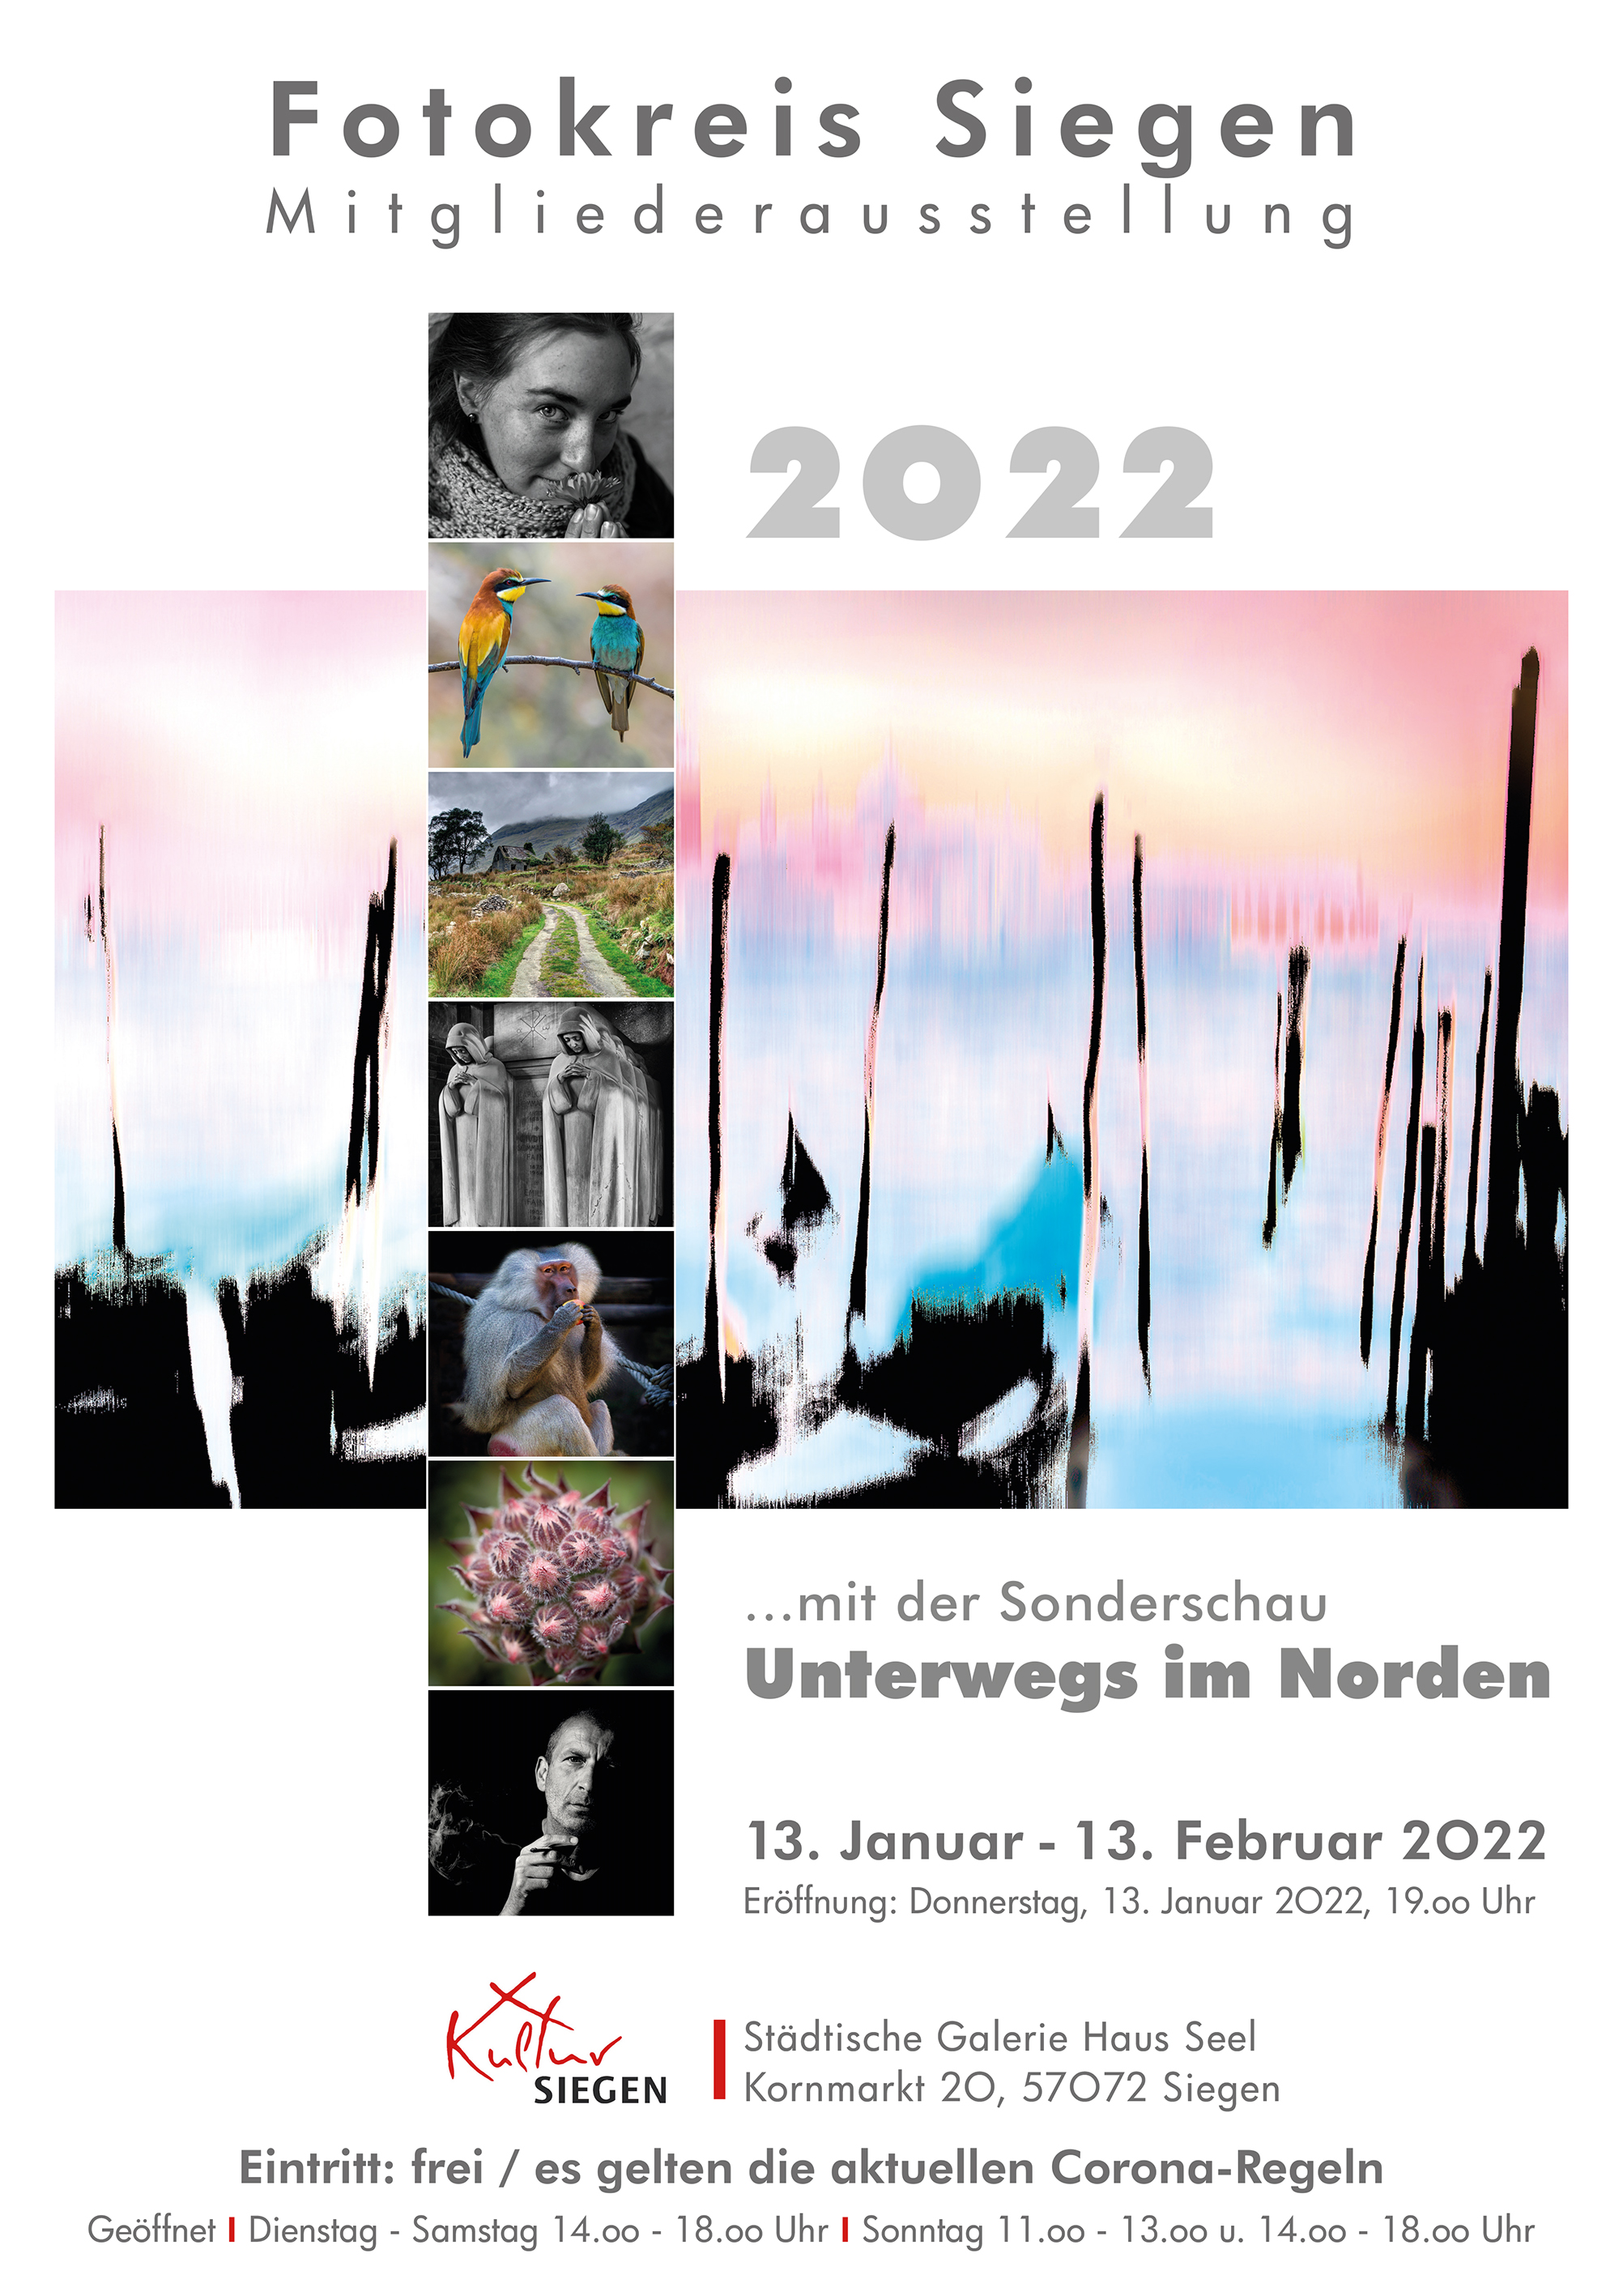 Mitgliederausstellung Fotokreis Siegen 2022